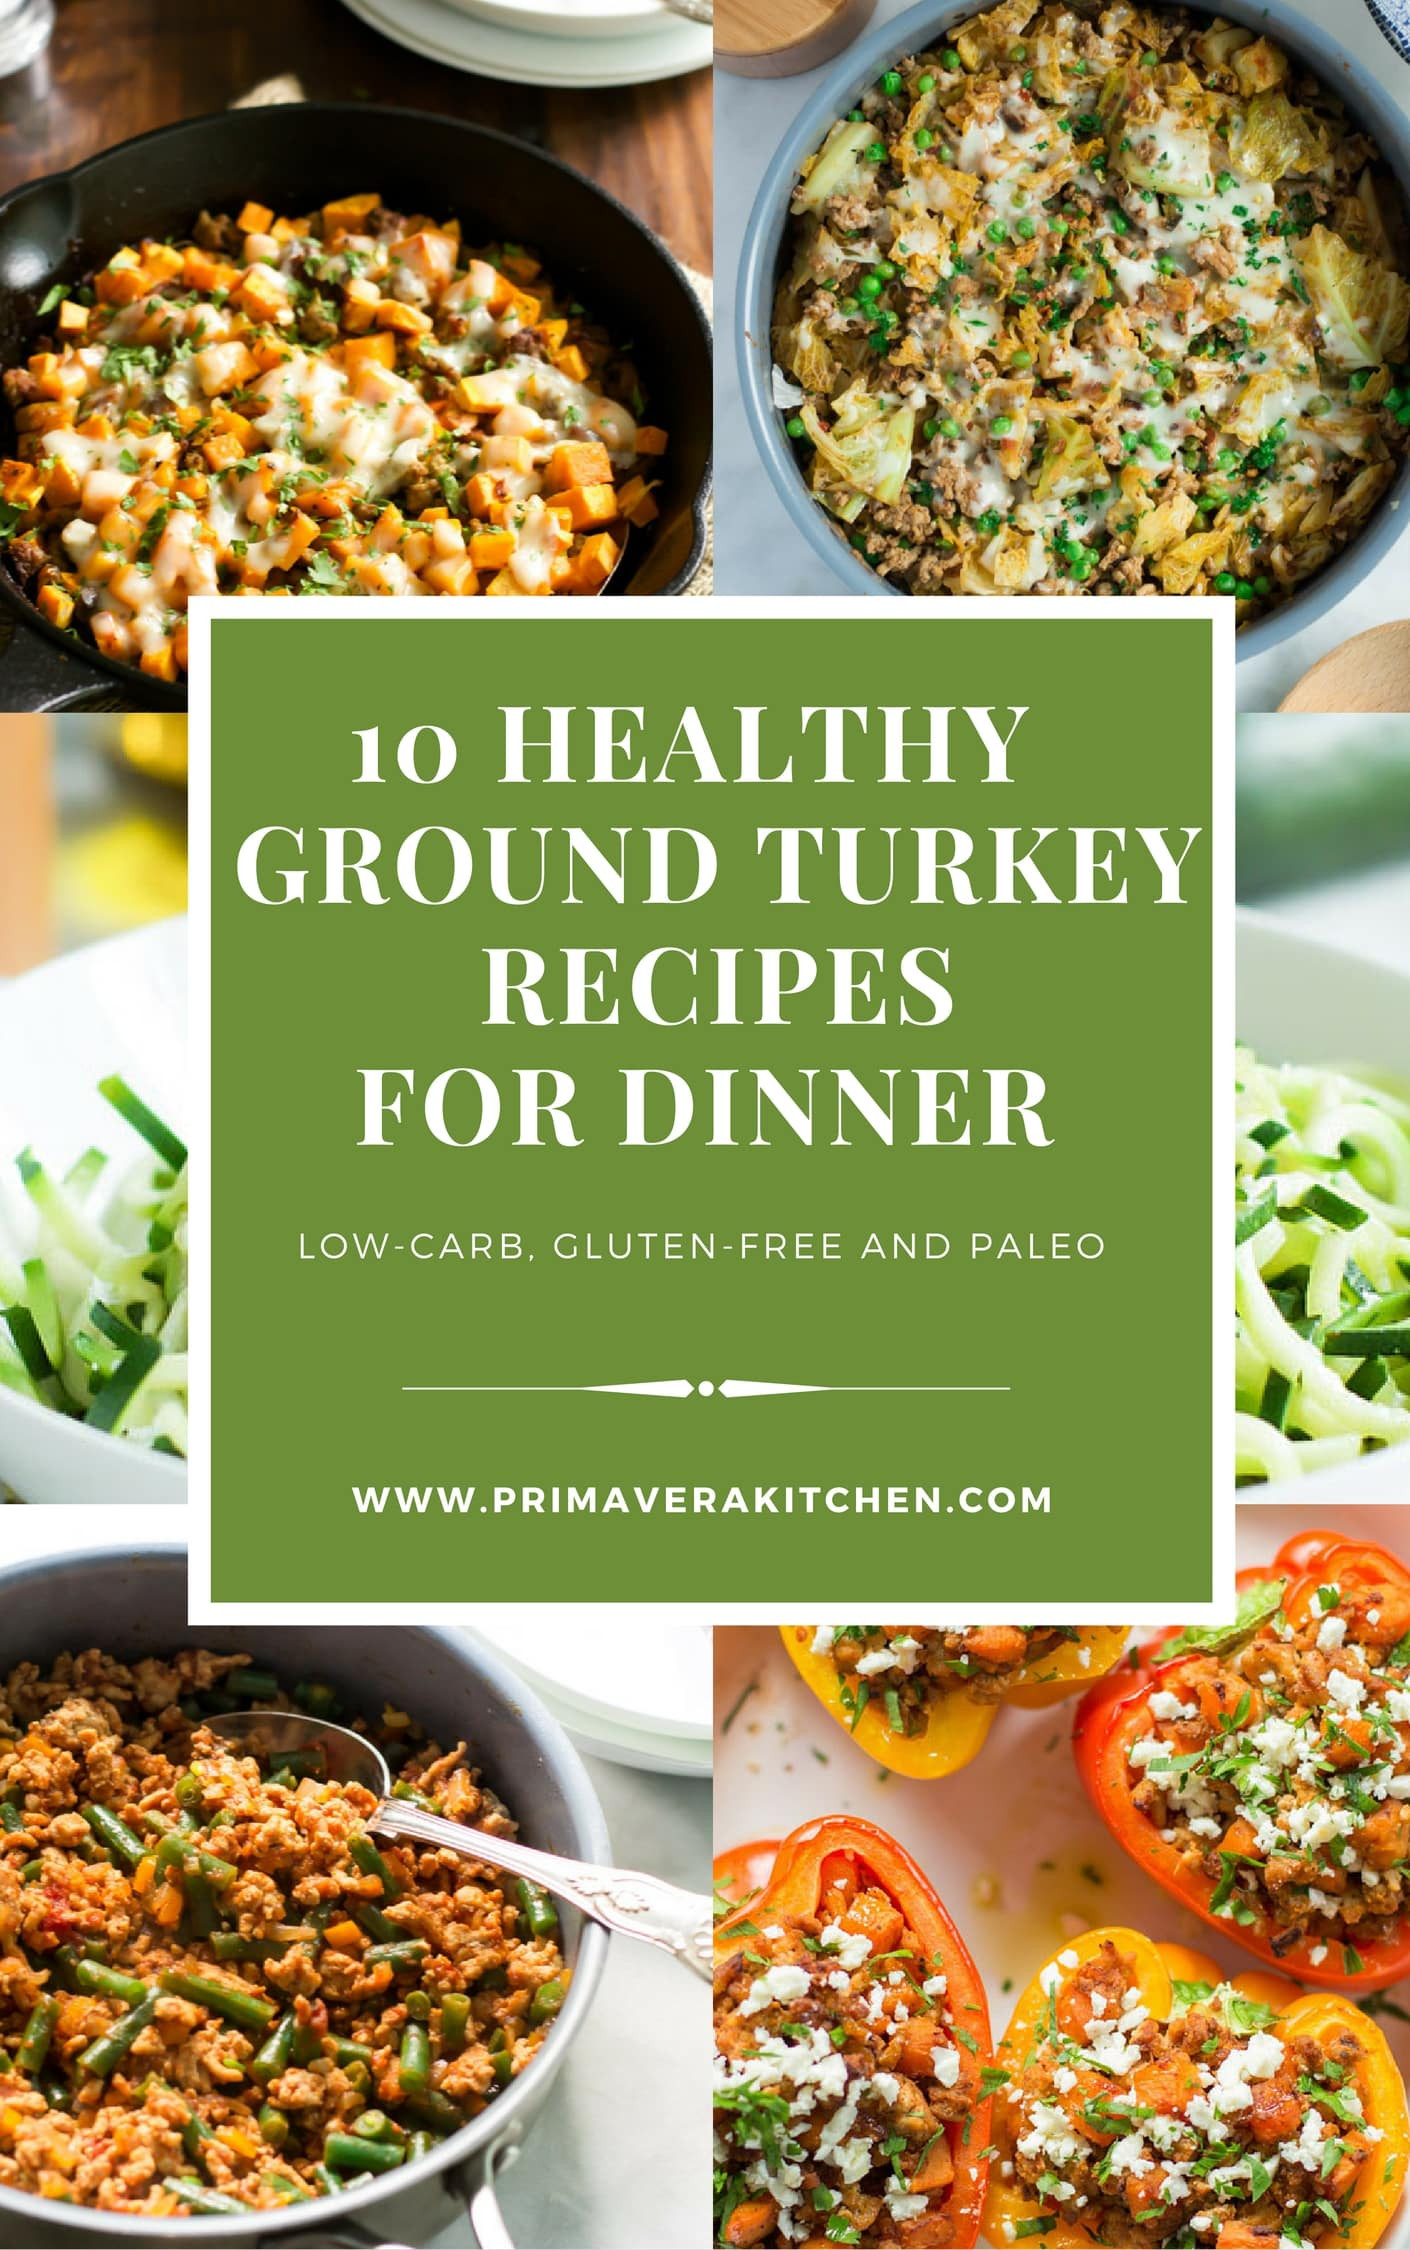 Quick Dinner Ideas With Ground Turkey
 10 Healthy Ground Turkey Recipes for Dinner Primavera